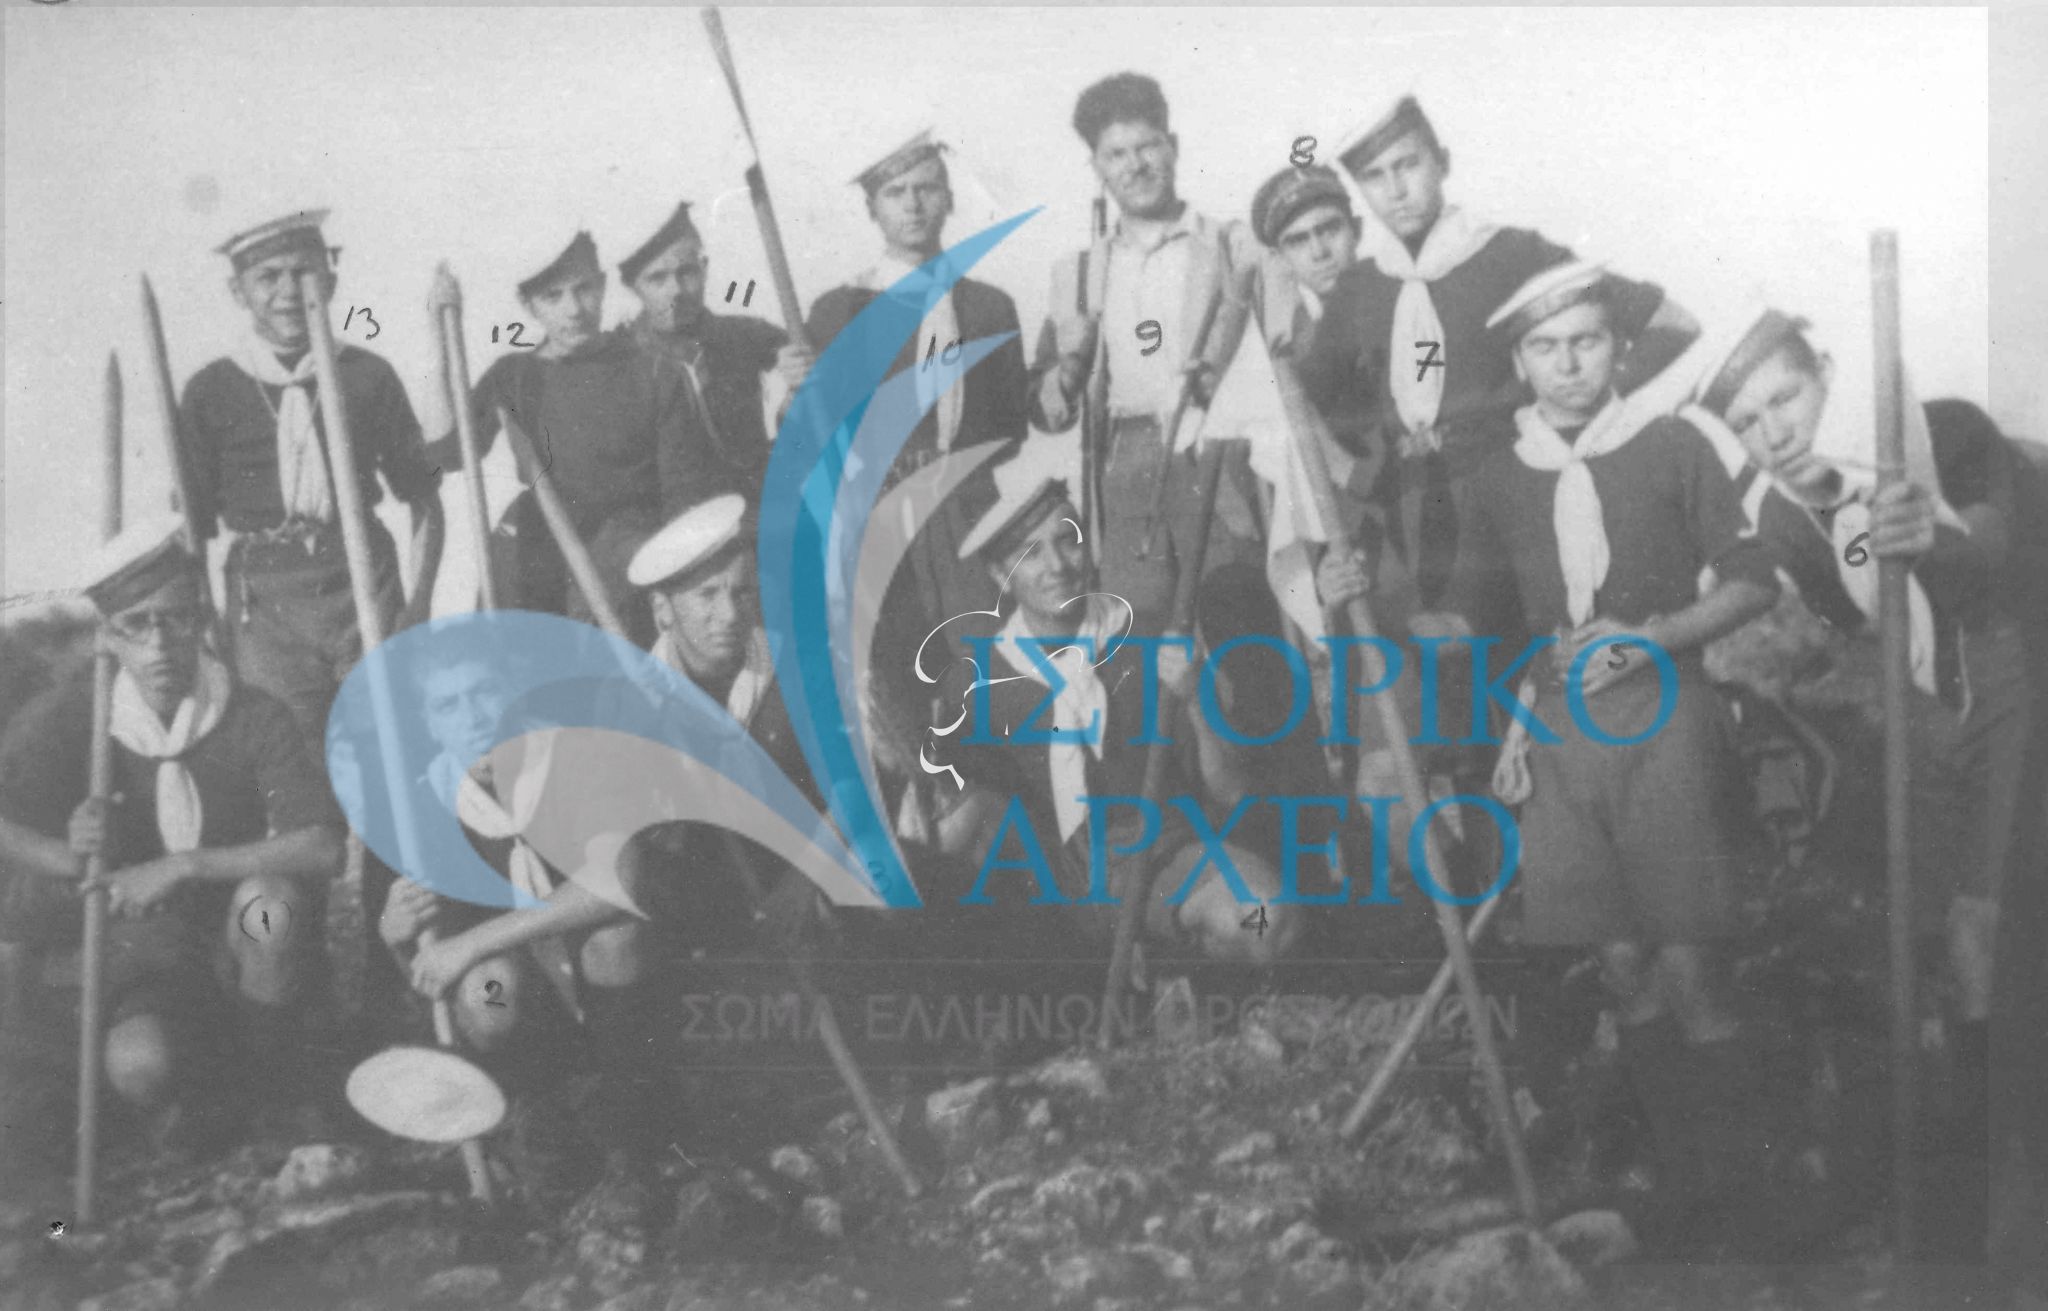 Οι ναυτοπρόσκοποι του Ρεθύμνου σε εκδρομή στην περιοχή Τρία Μοναστήρια με αρχηγό τον Ε. Μαρνέλλο το 1938. Διακρίνονται επίσης: Κίμωμ Τζέτσος, Εμμα. Δορυφόρος, Ε. Χαλκιαδάκης, Γ. Ψαρουδάκης, Θ. Καλλέργης, Στ. Παναγιωτάκης, Γ. Παρταλιάς, Δημ. Καλούδης, Χ. Νεονάκης, Π. Πρινιωτάκης.